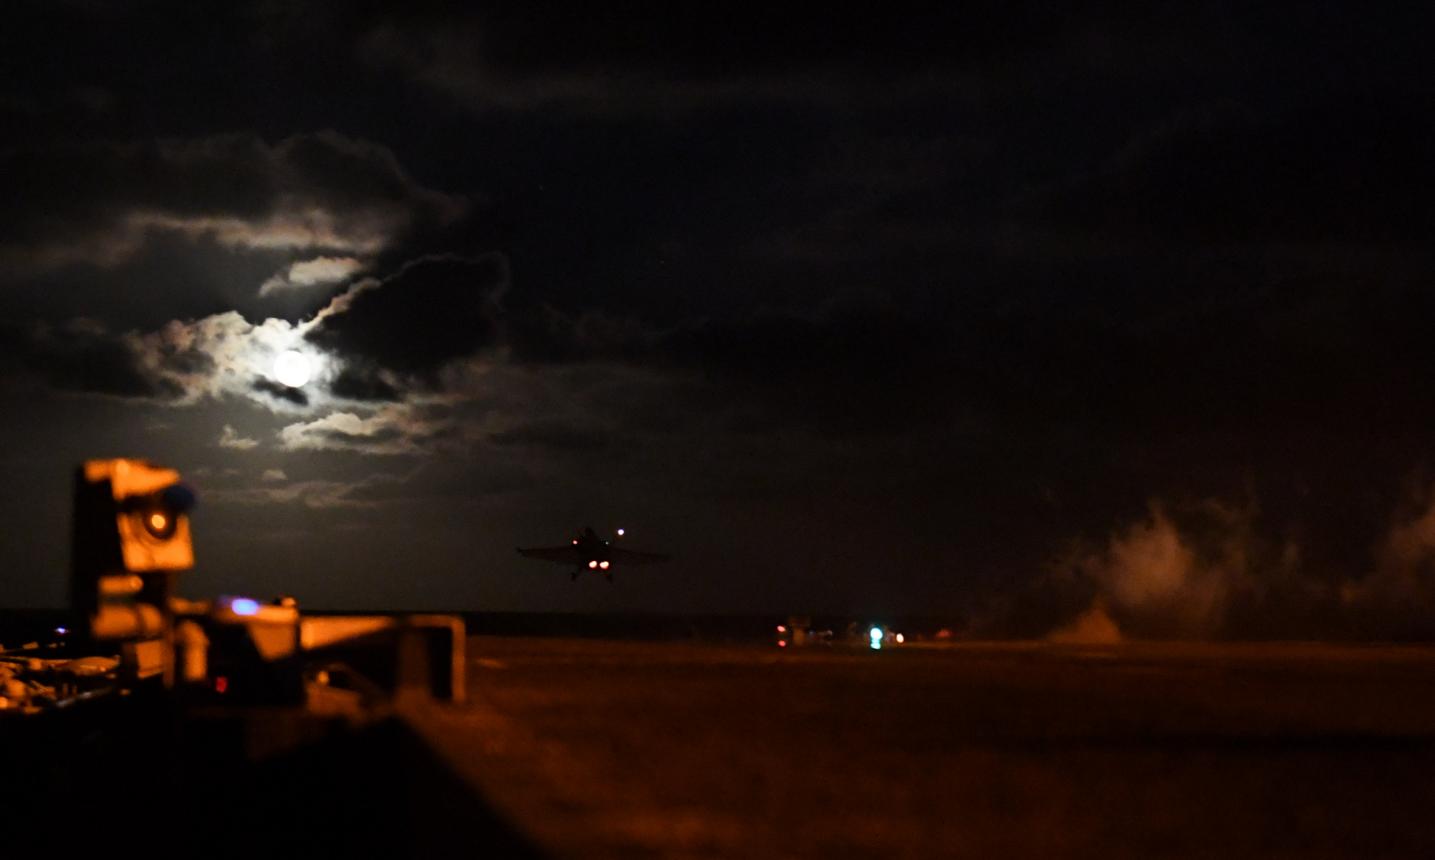 Ночной старт истребителя F/A-18E Super Hornet 211-й истребительно-бомбардировочной эскадрильи (Fighting Checkmates) с палубы авианосца  USS Harry S. Truman (CVN 75) в рамках учения Trident Juncture 18,  фото сделано 27 октября 2018 года в акватории Норвежского моря